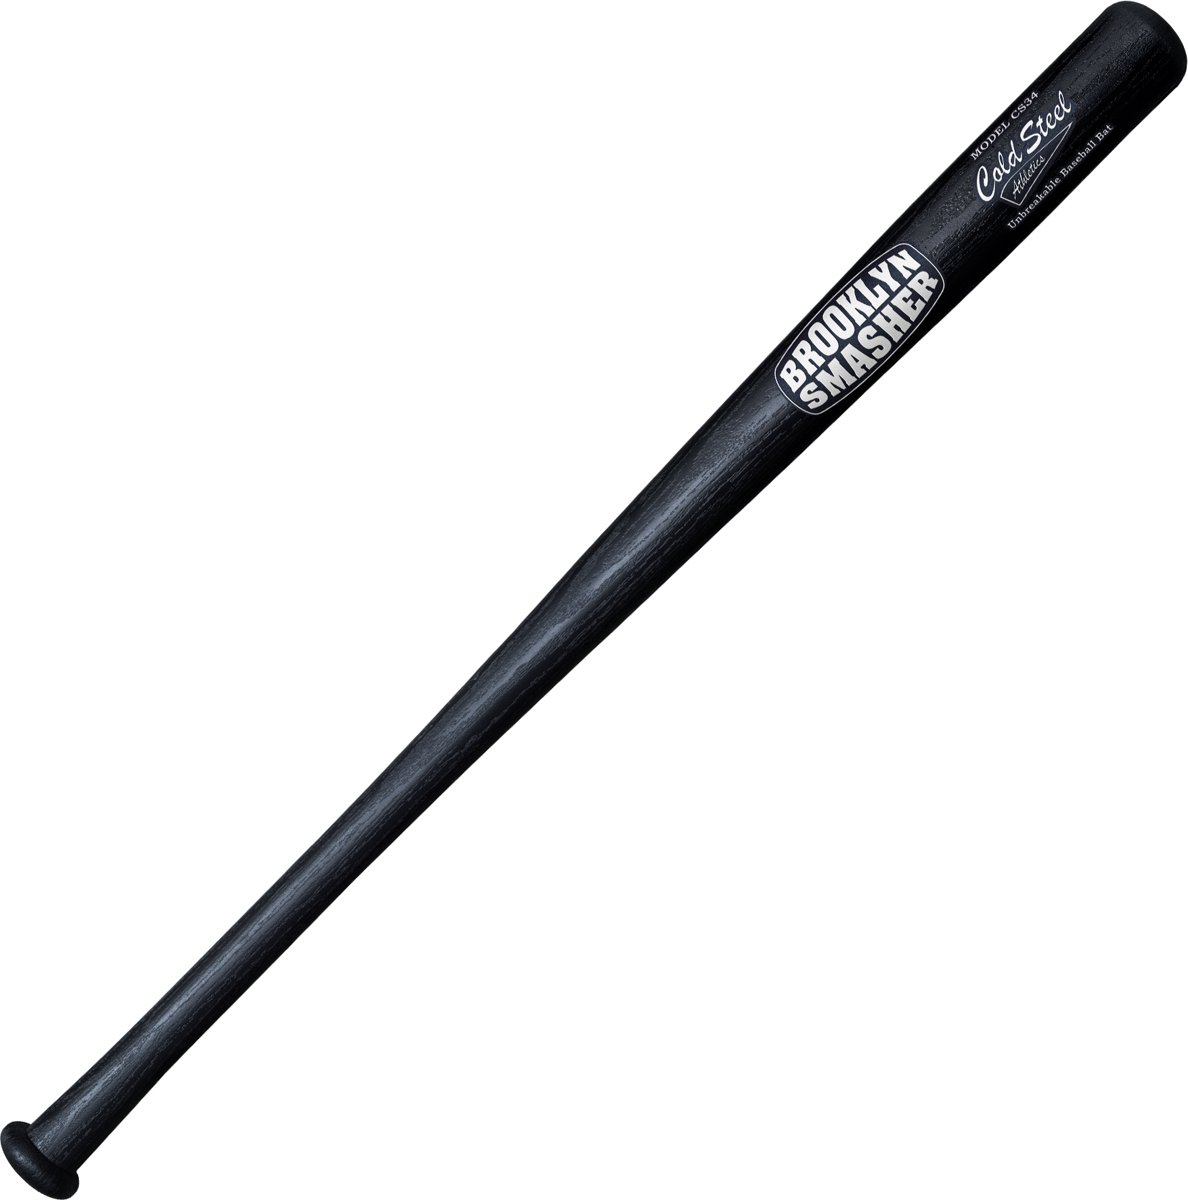 Onbreekbare Honkbalknuppel - The Smasher - 87 cm Kunststof Baseball Bat Honkbal Knuppel Onbreekbaar